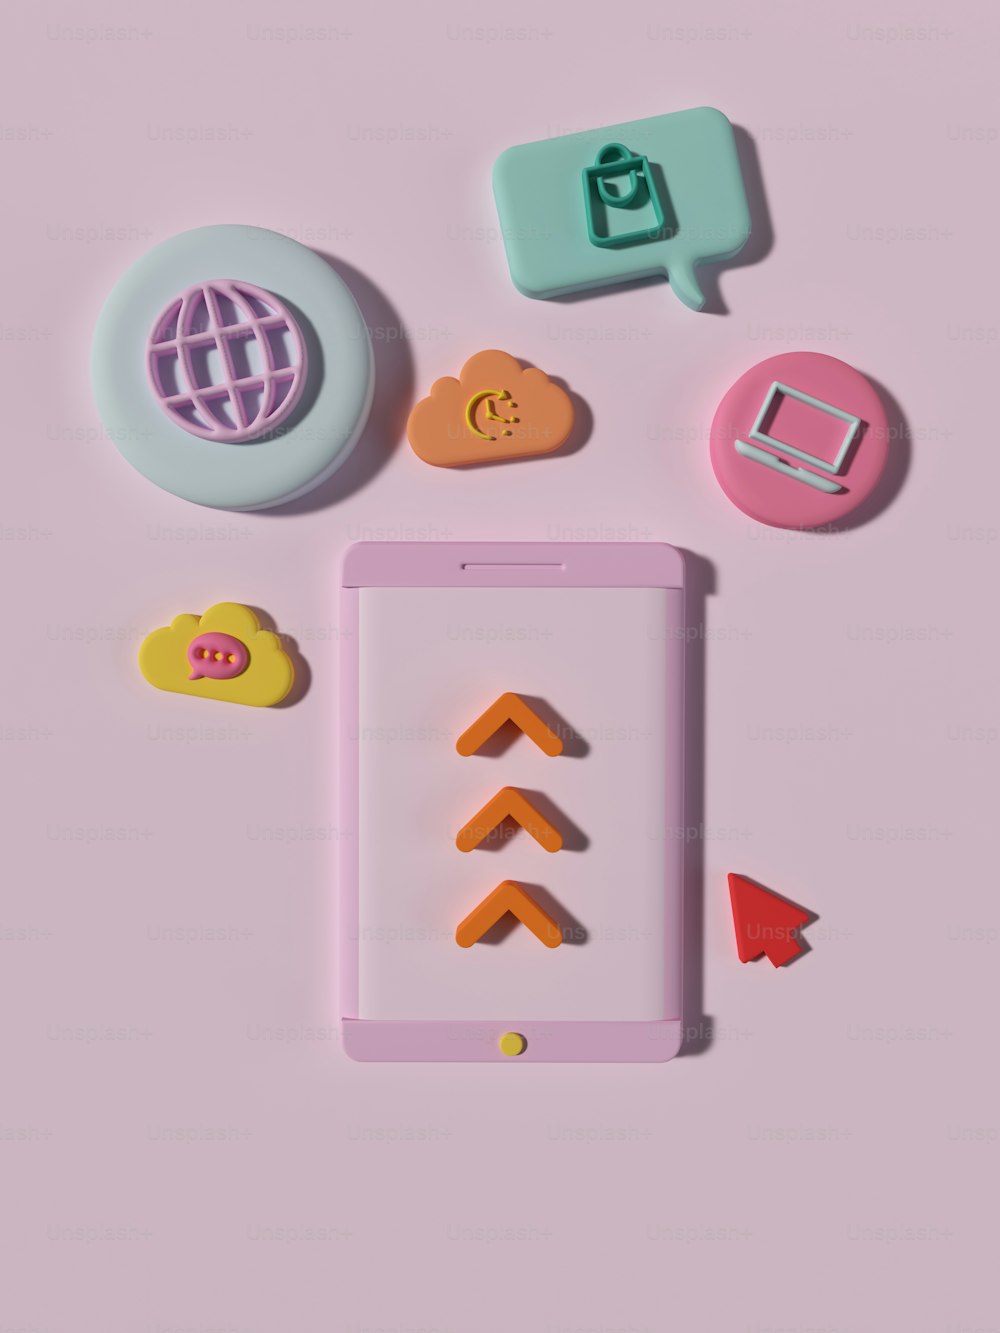 un teléfono celular sentado encima de una superficie rosada